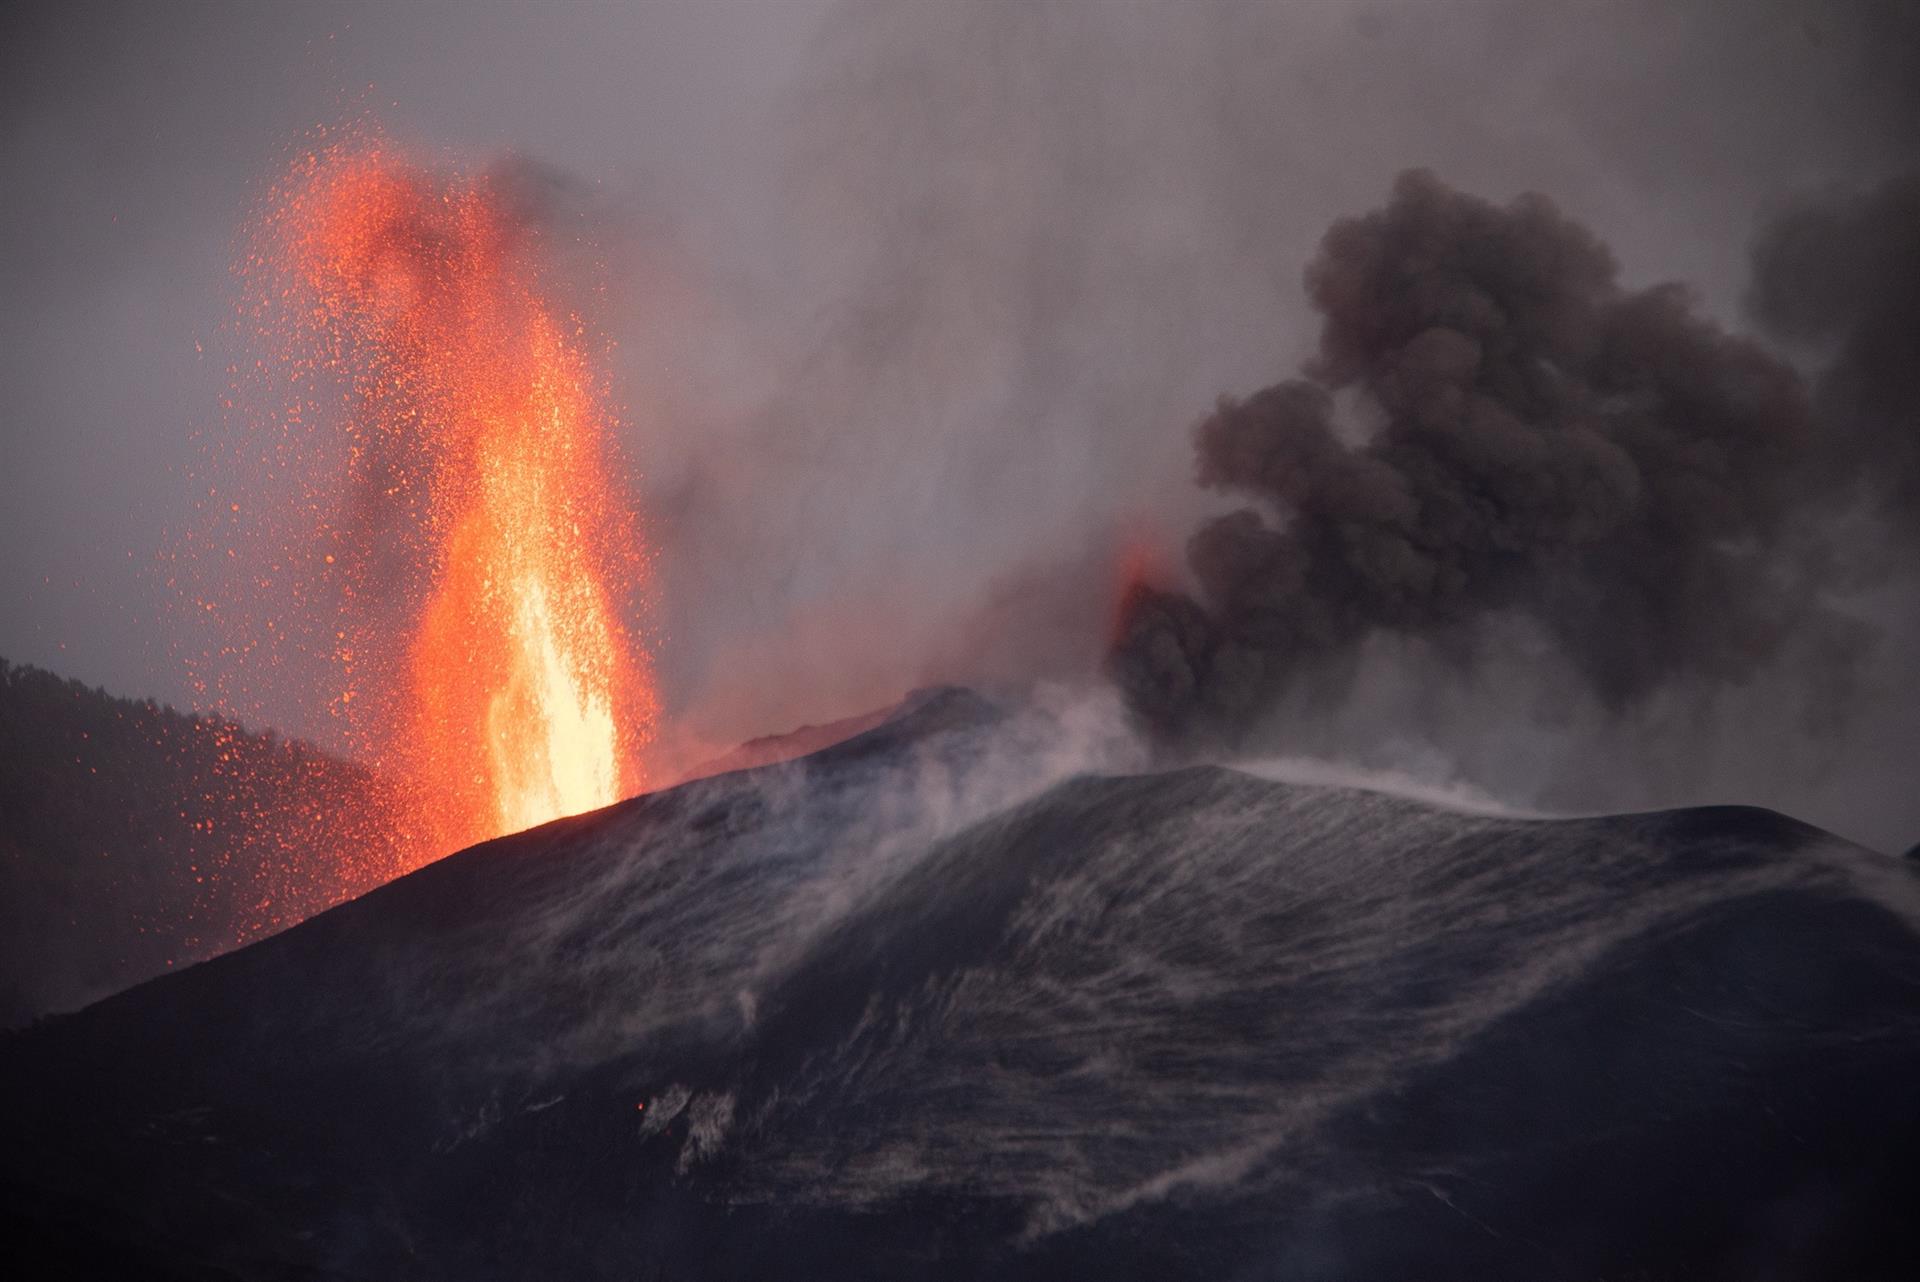 La erupción en el volcán de La Palma llevaba cuatro años preparándose